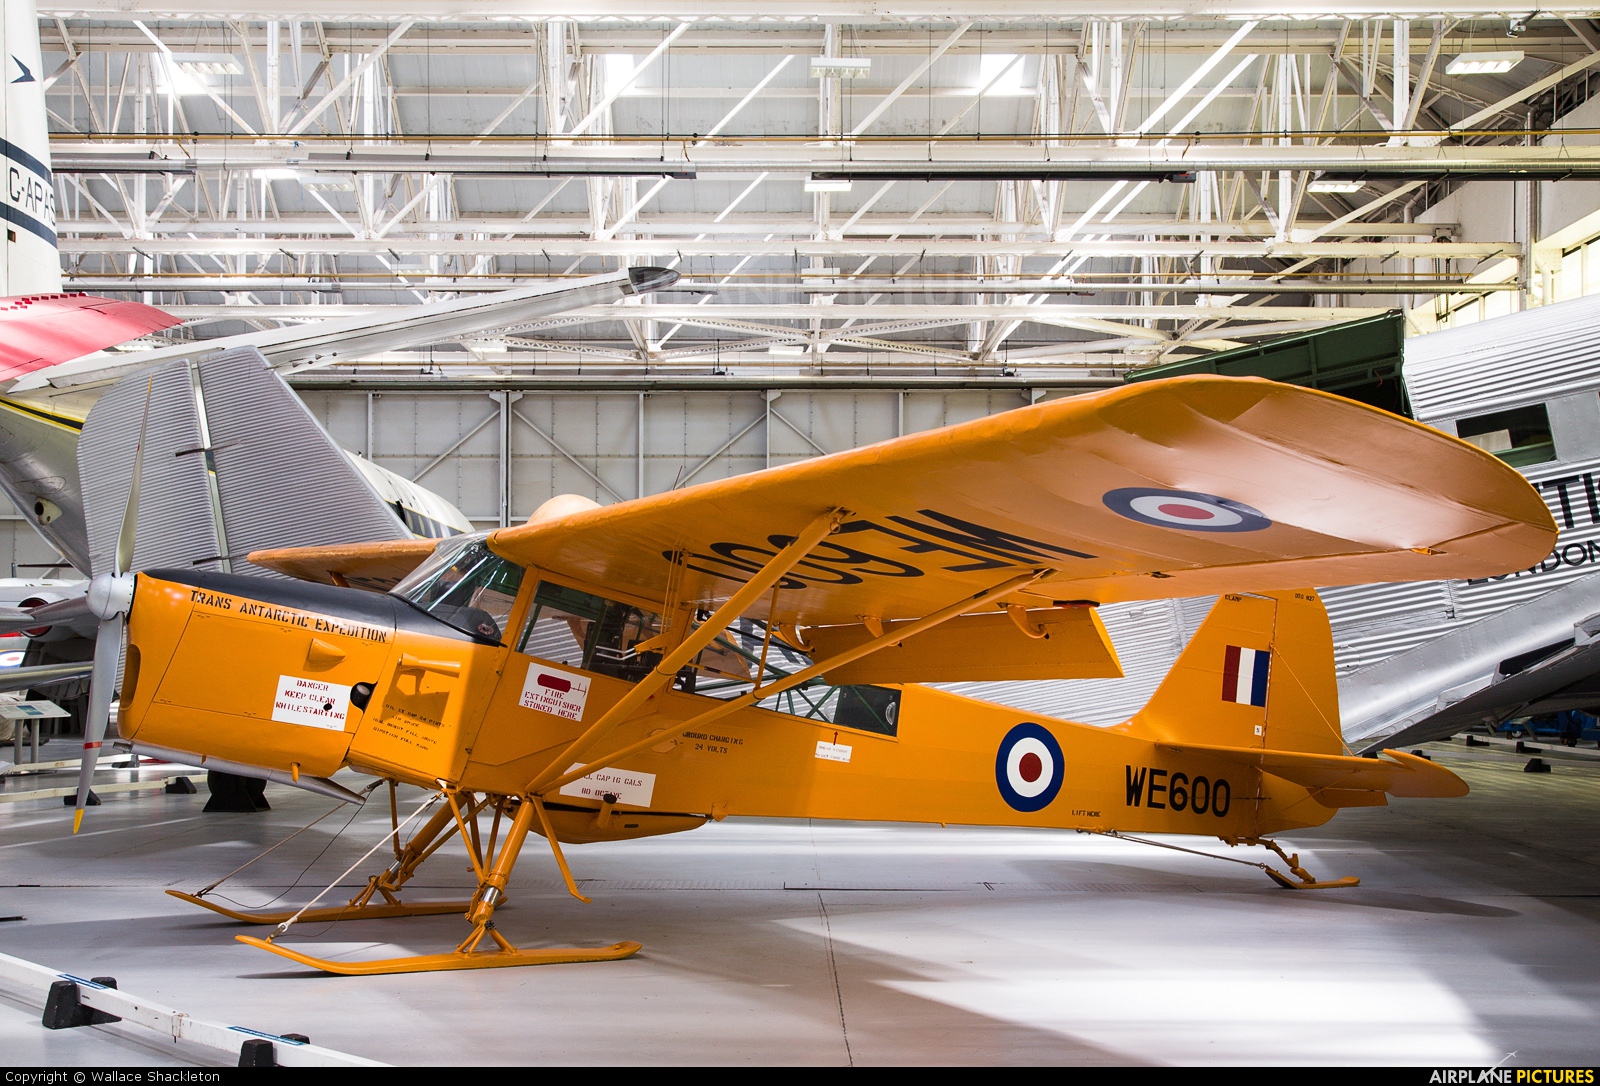 Royal Air Force WE600 aircraft at Cosford - RAF Museum